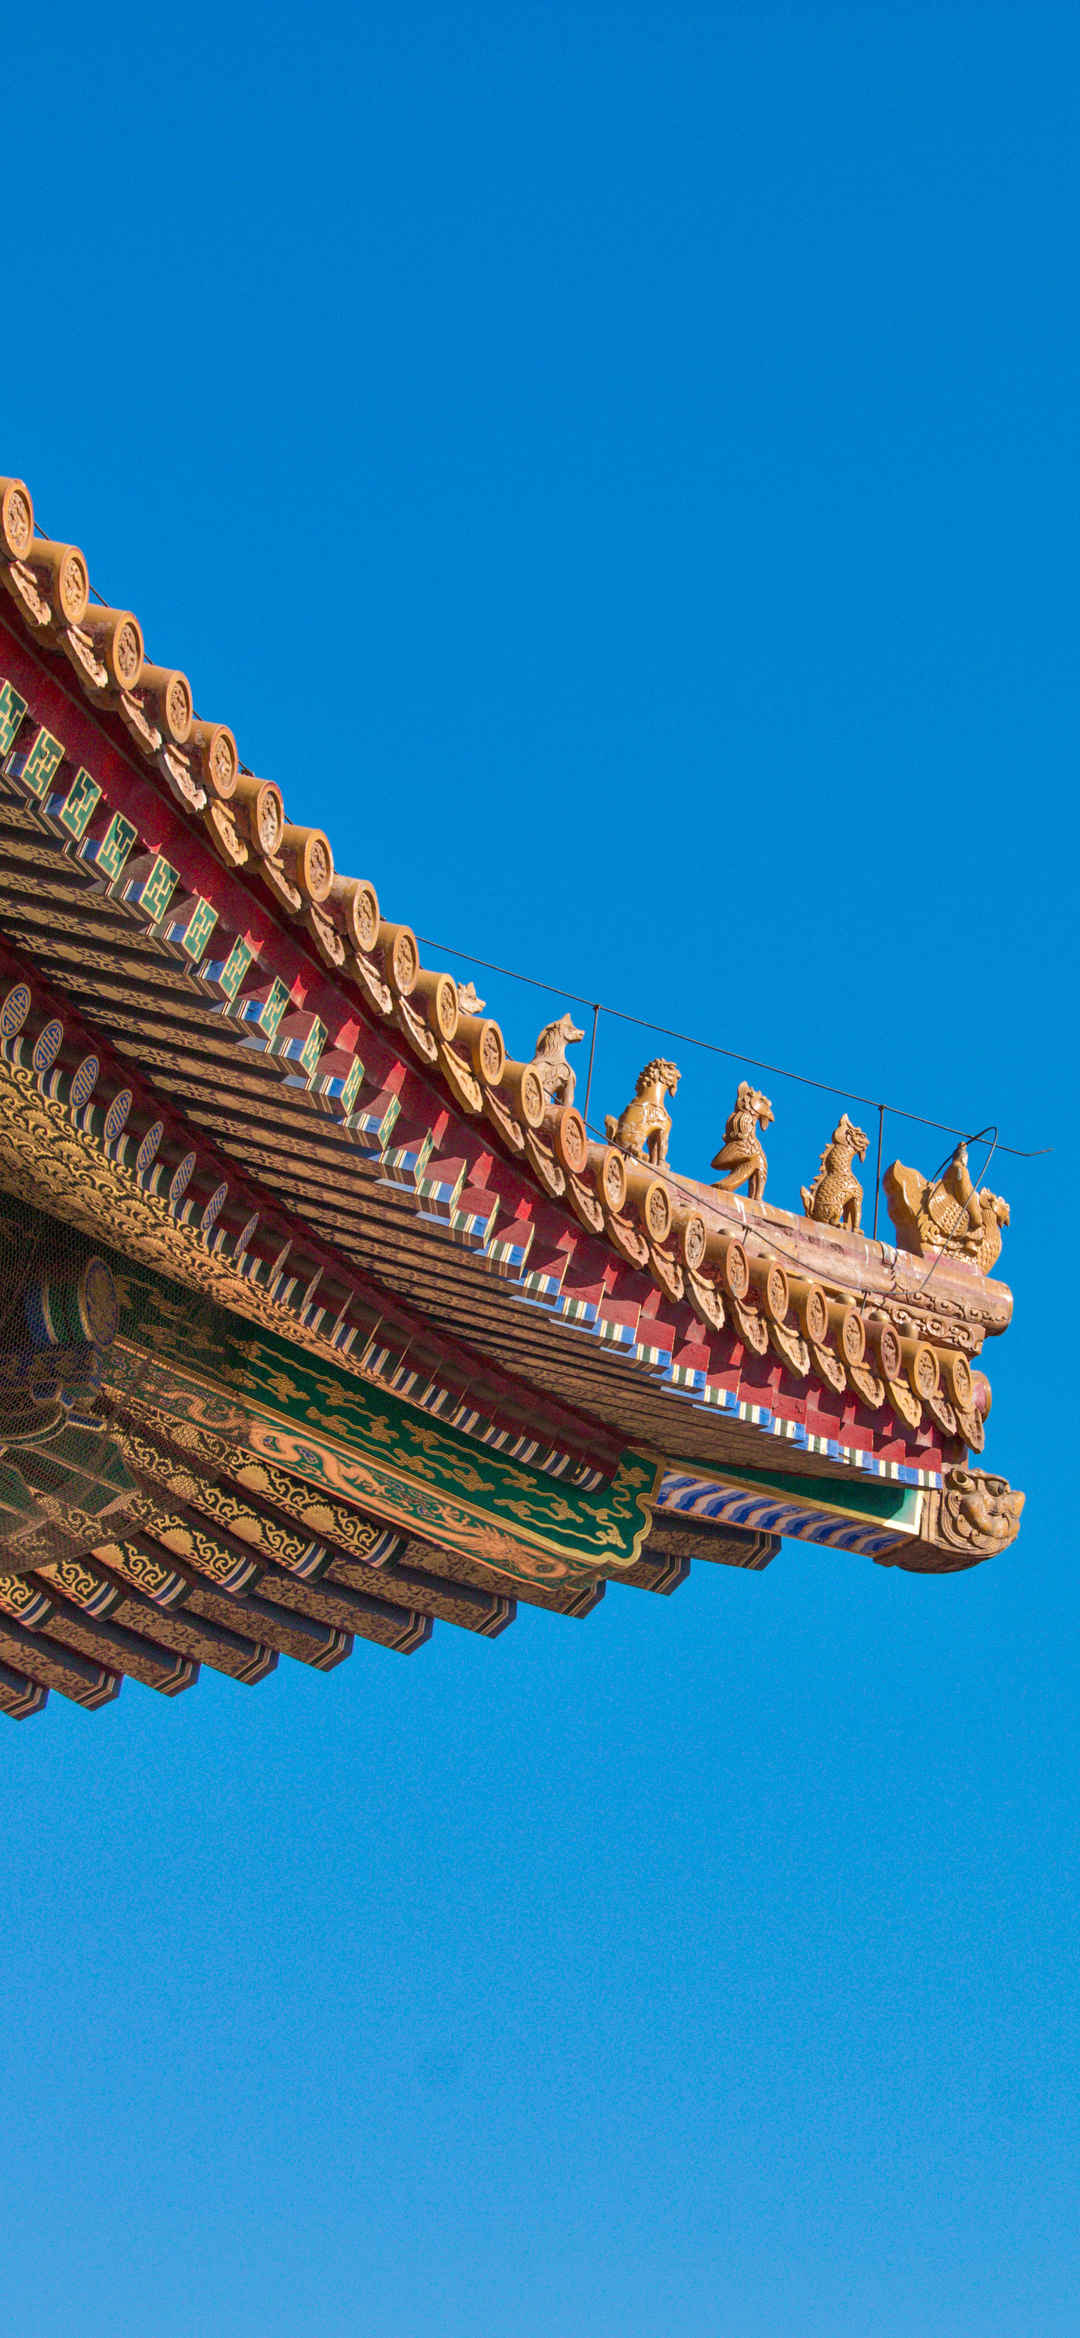 北京故宫天坛房檐雕栏风景壁纸